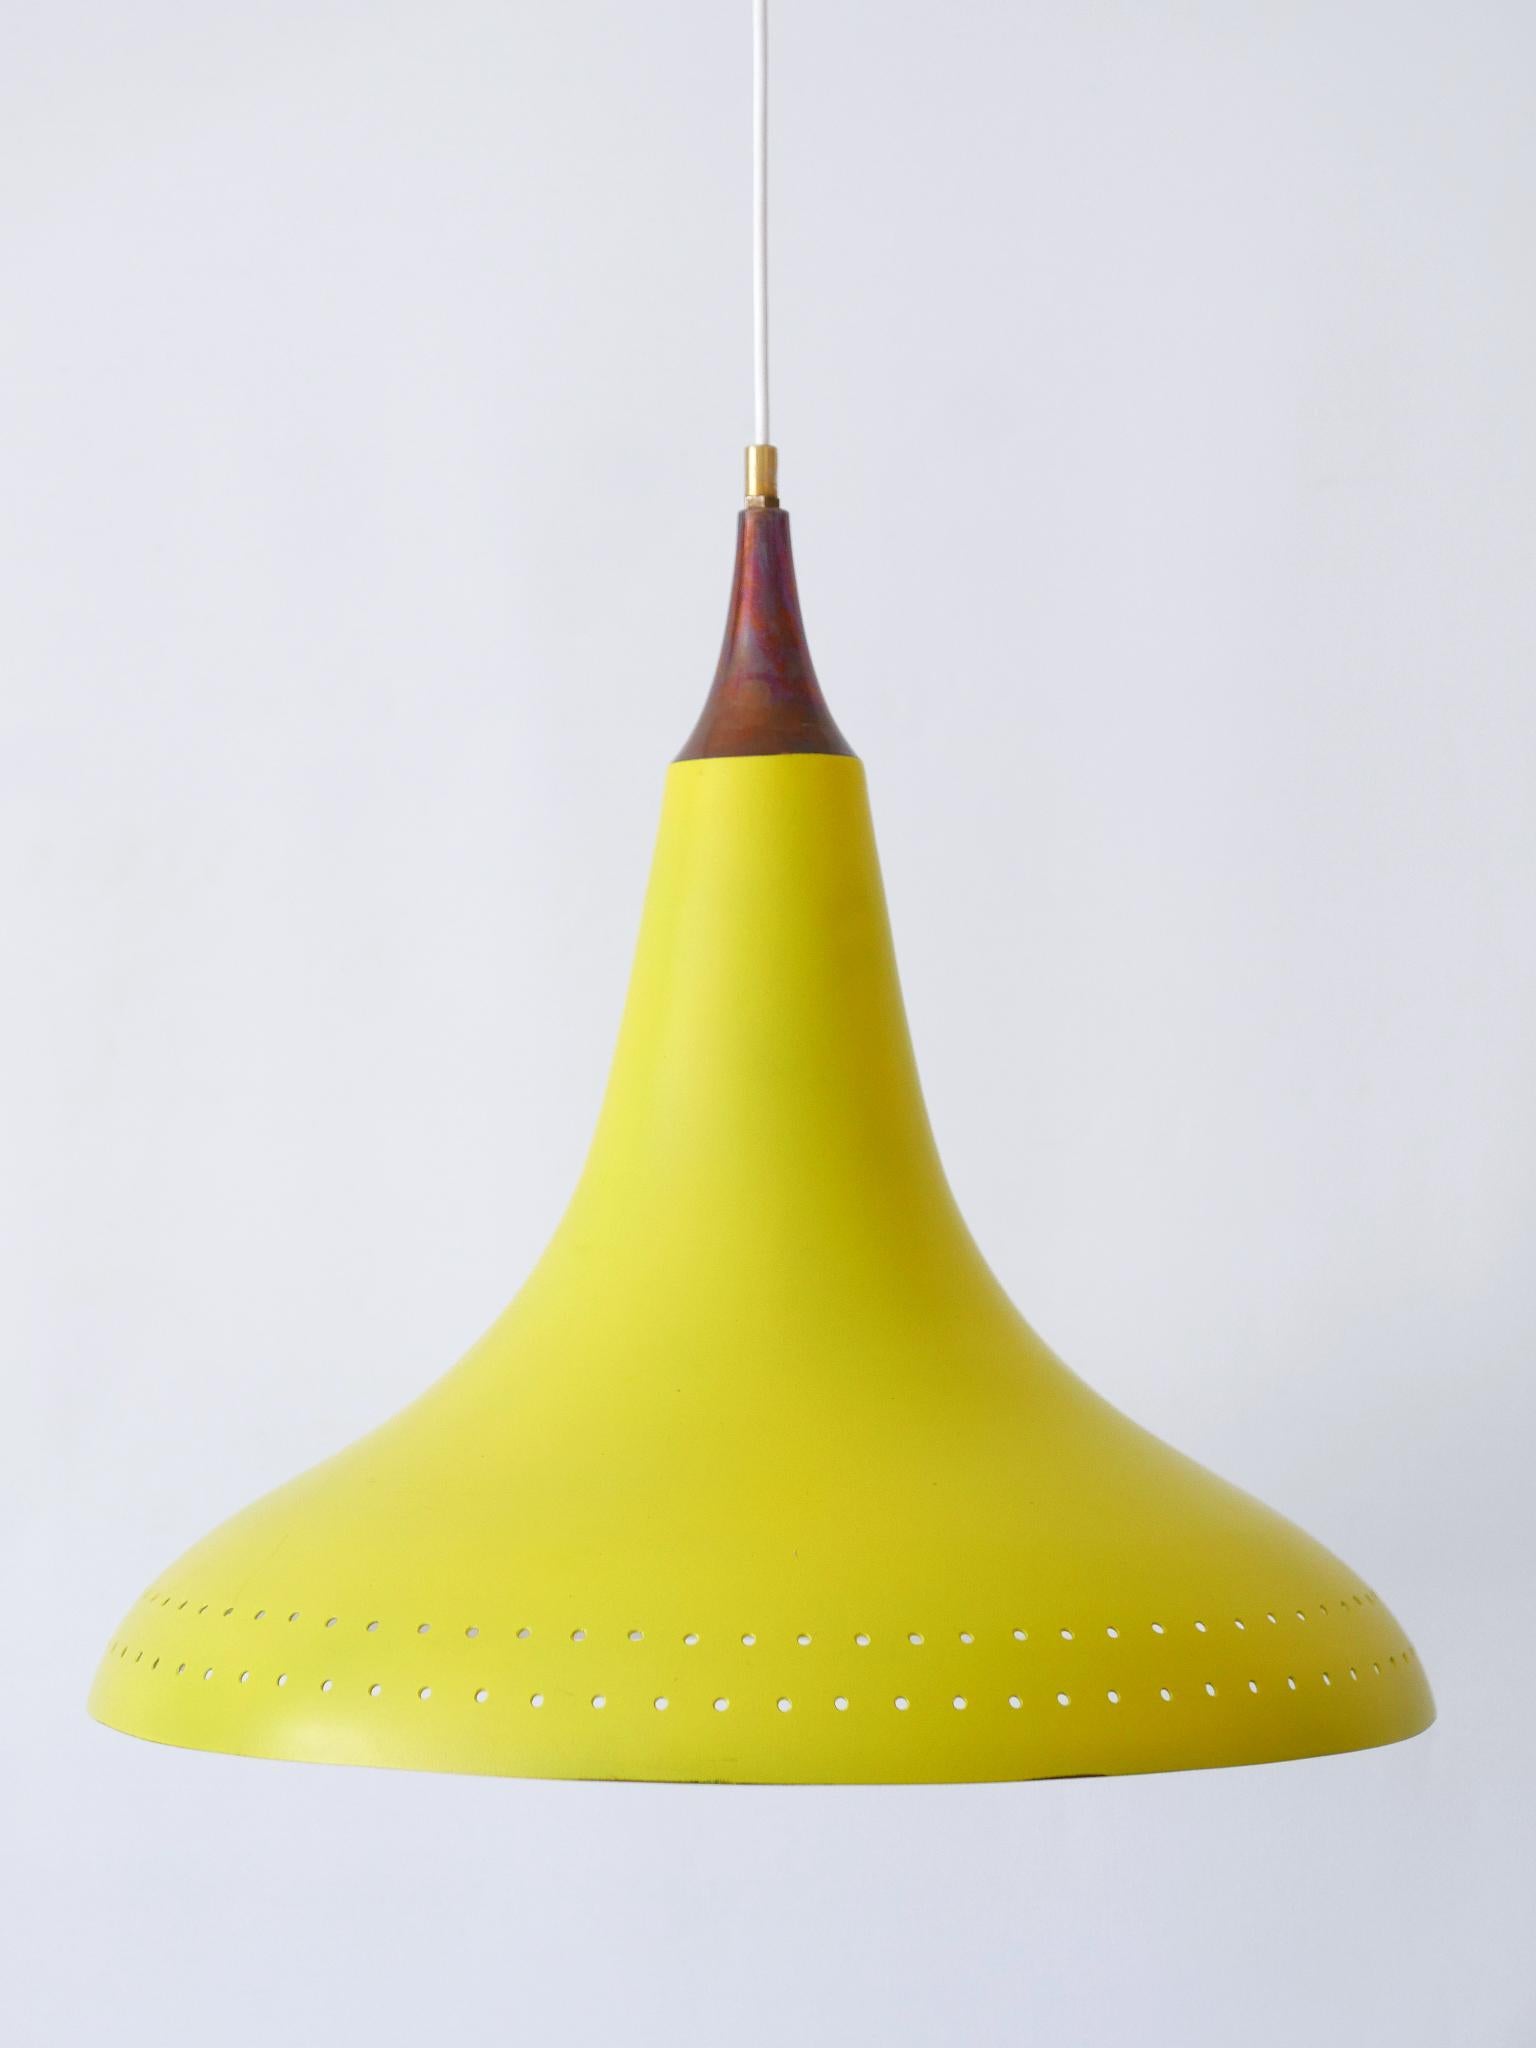 Exceptional Mid-Century Modern Perforated Aluminium Pendant Lamp Austria 1960s For Sale 9